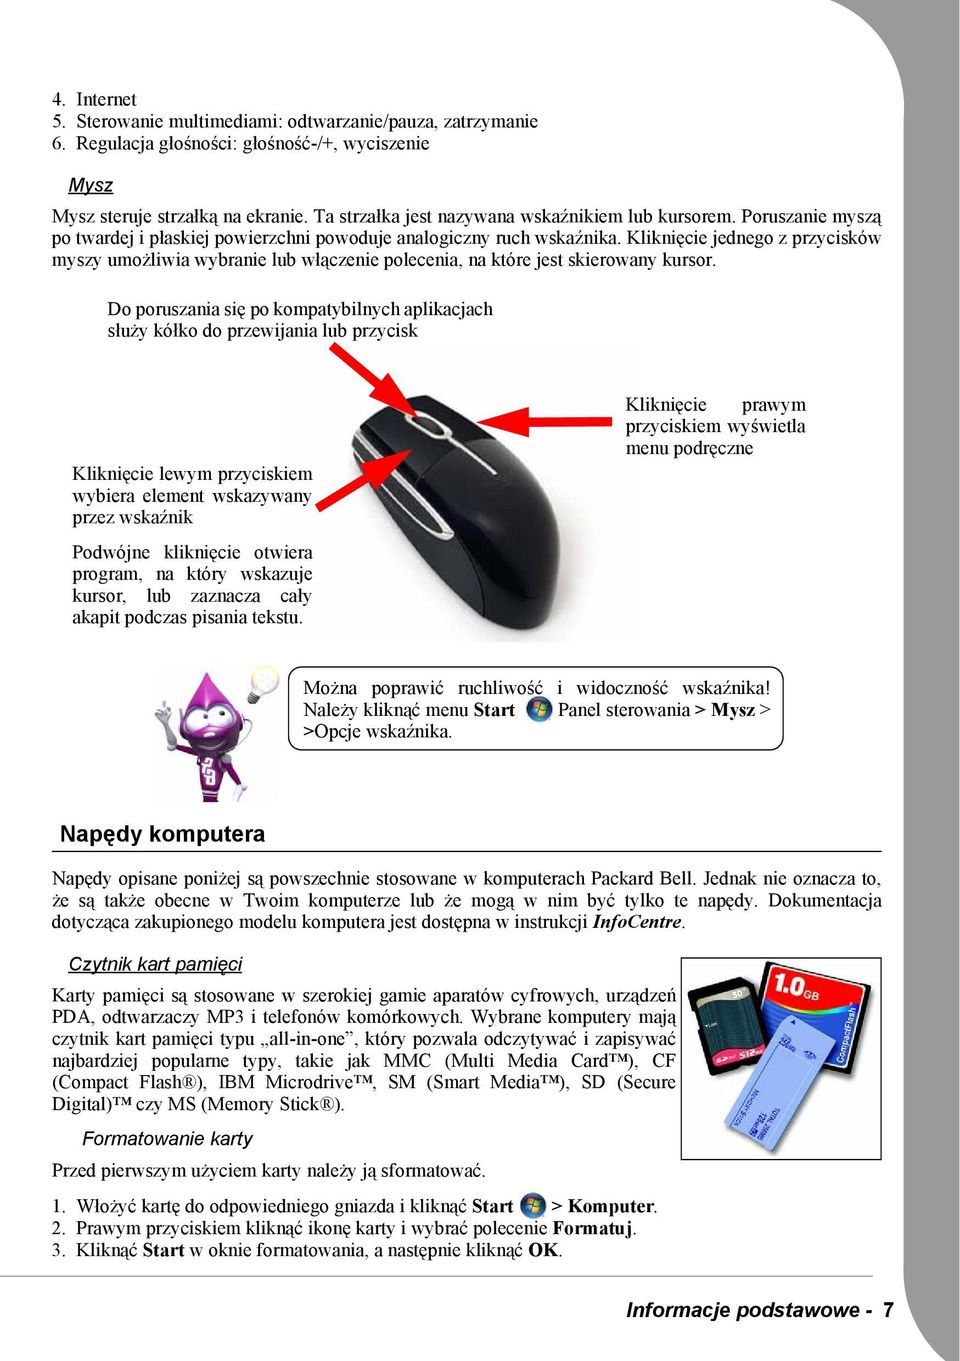 Kliknięcie jednego z przycisków myszy umożliwia wybranie lub włączenie polecenia, na które jest skierowany kursor.